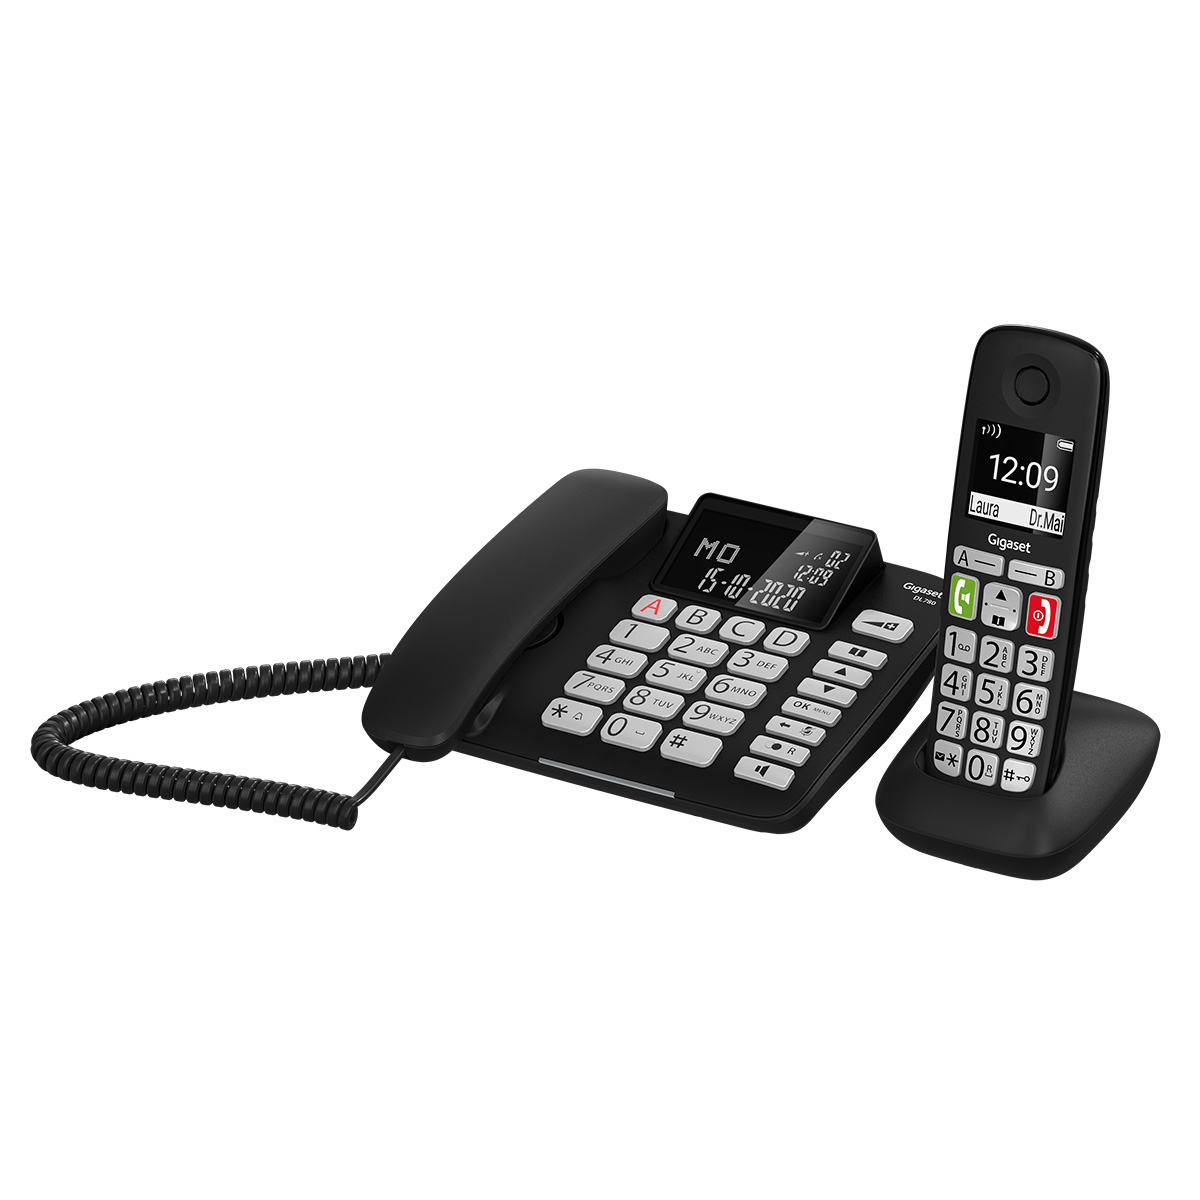 gemeinsames Telefonbuch Verstärker-Funktion für extra lautes Hören Gigaset DL780 Plus schwarzrz hörgerätekompatibel Schnurgebundenes Telefon & schnurloses Telefon Kombi-Set 